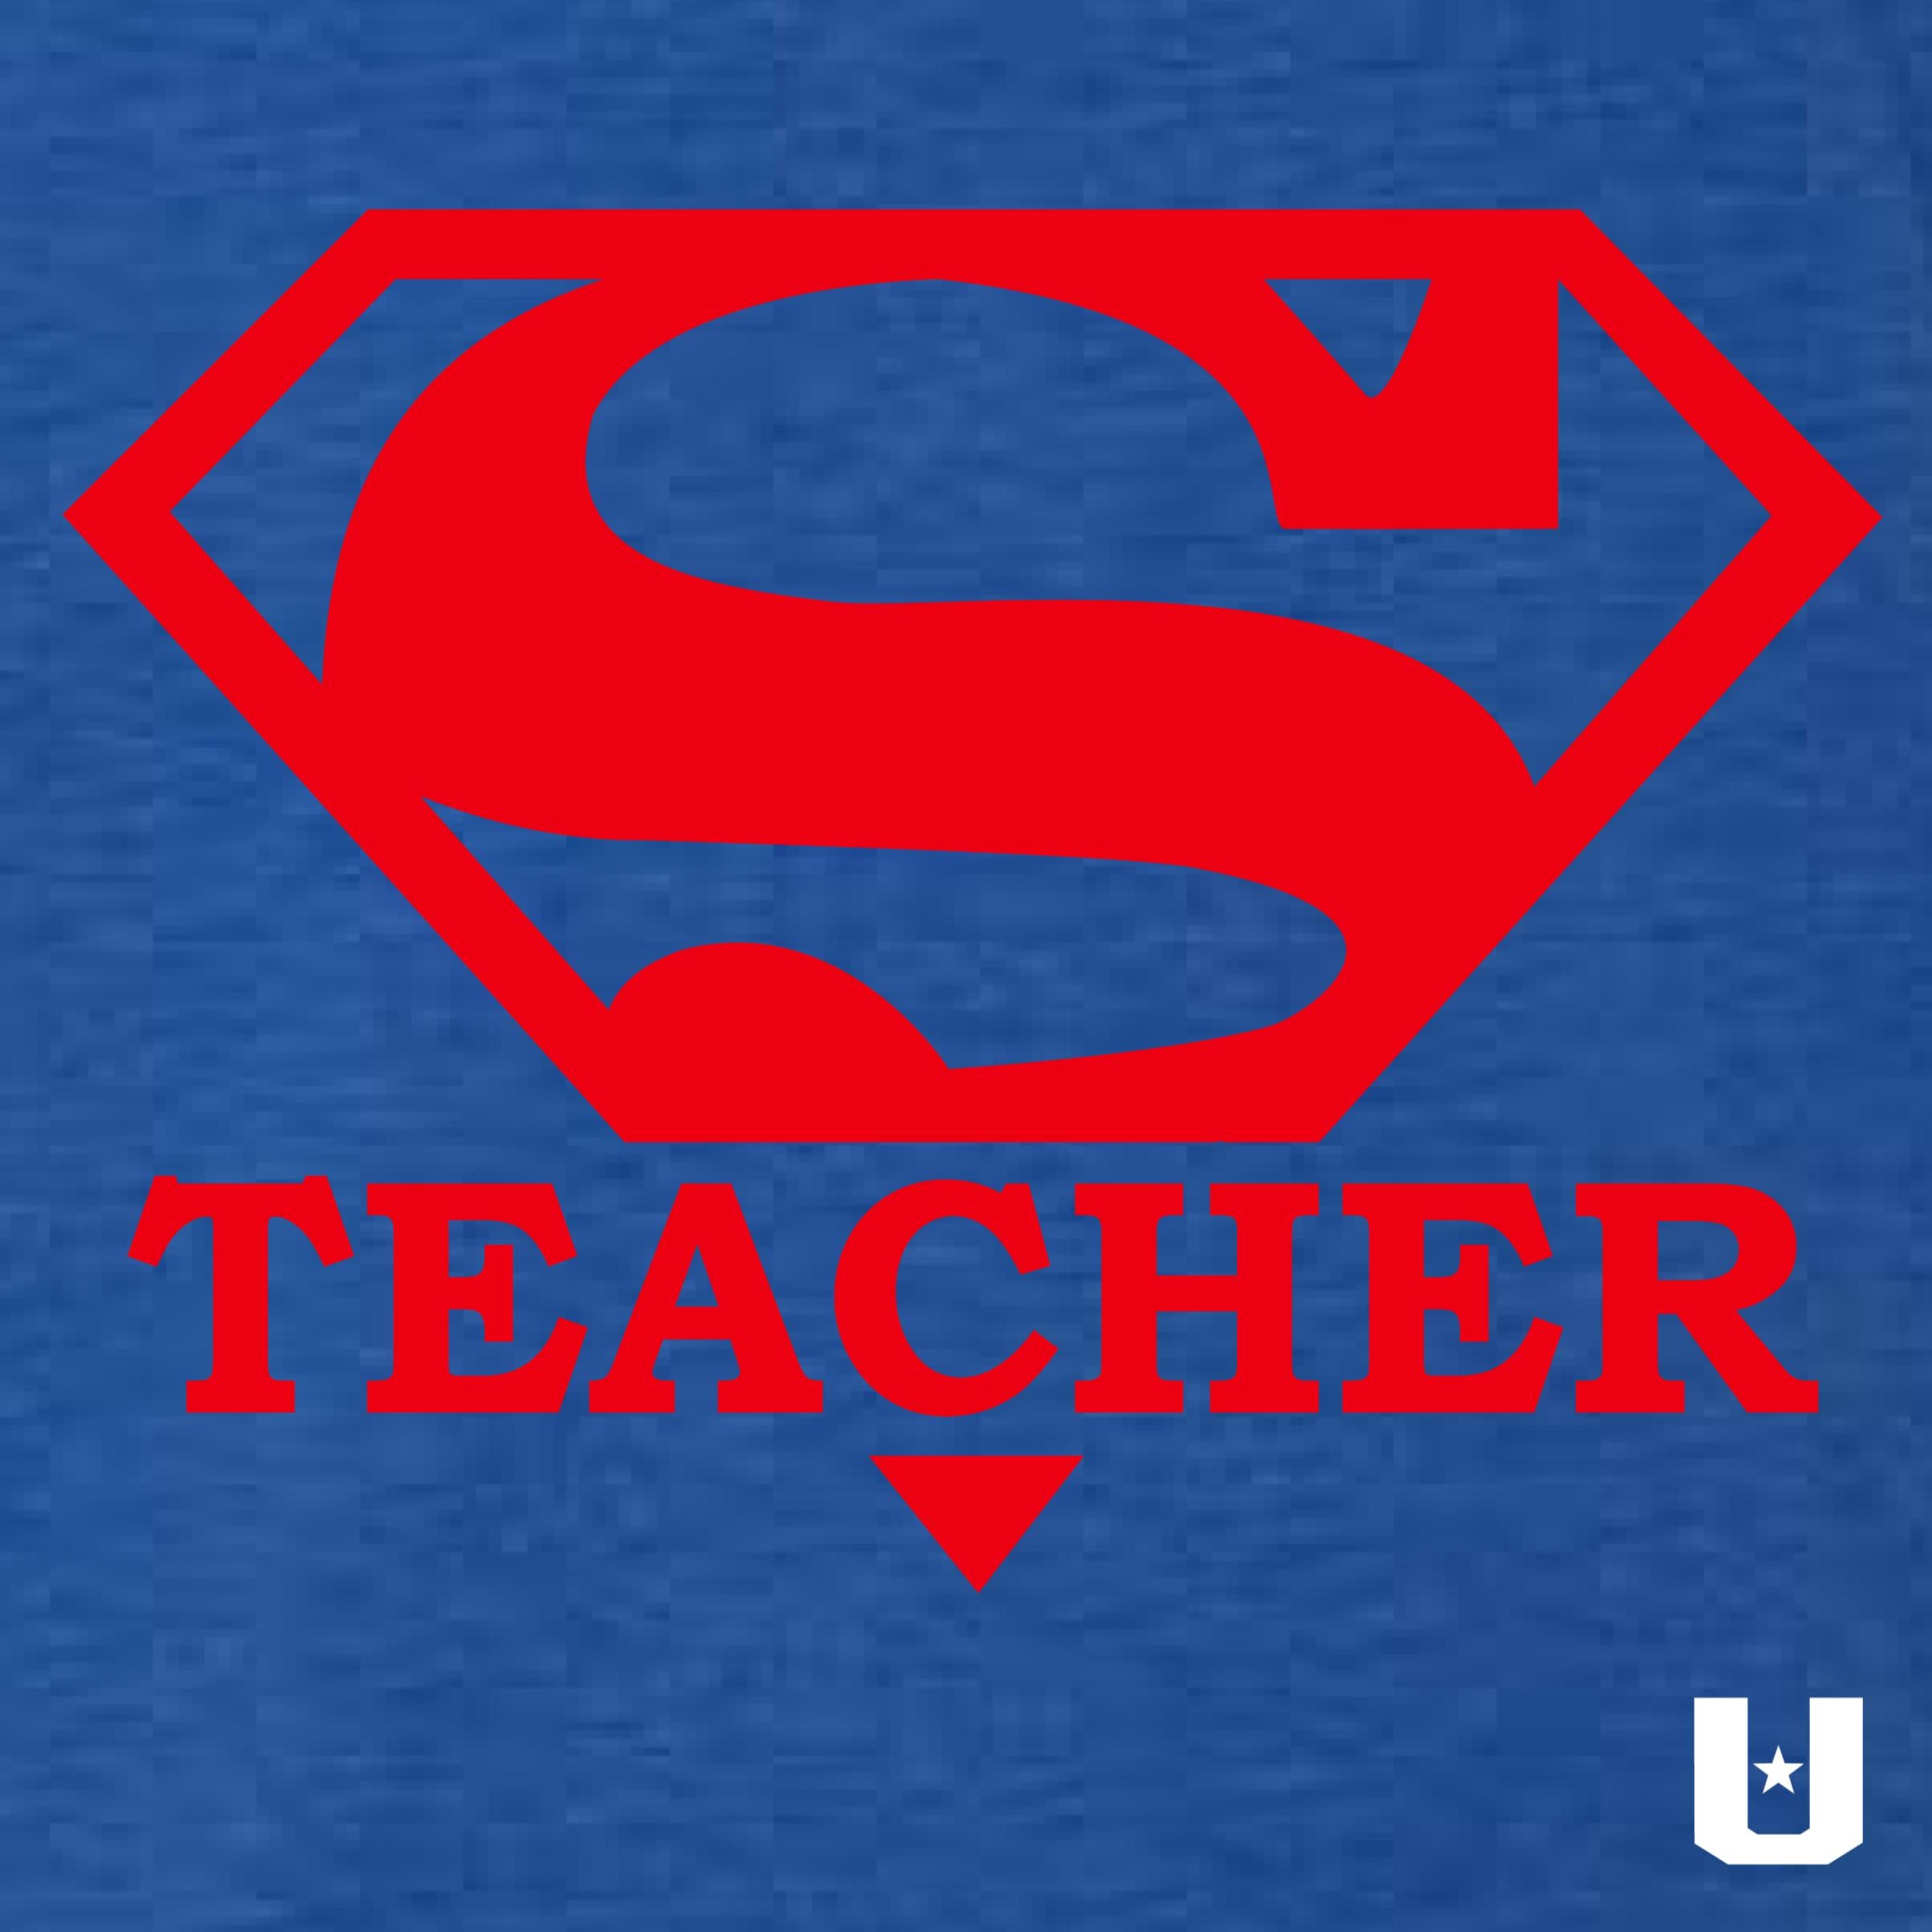 super teacher logo